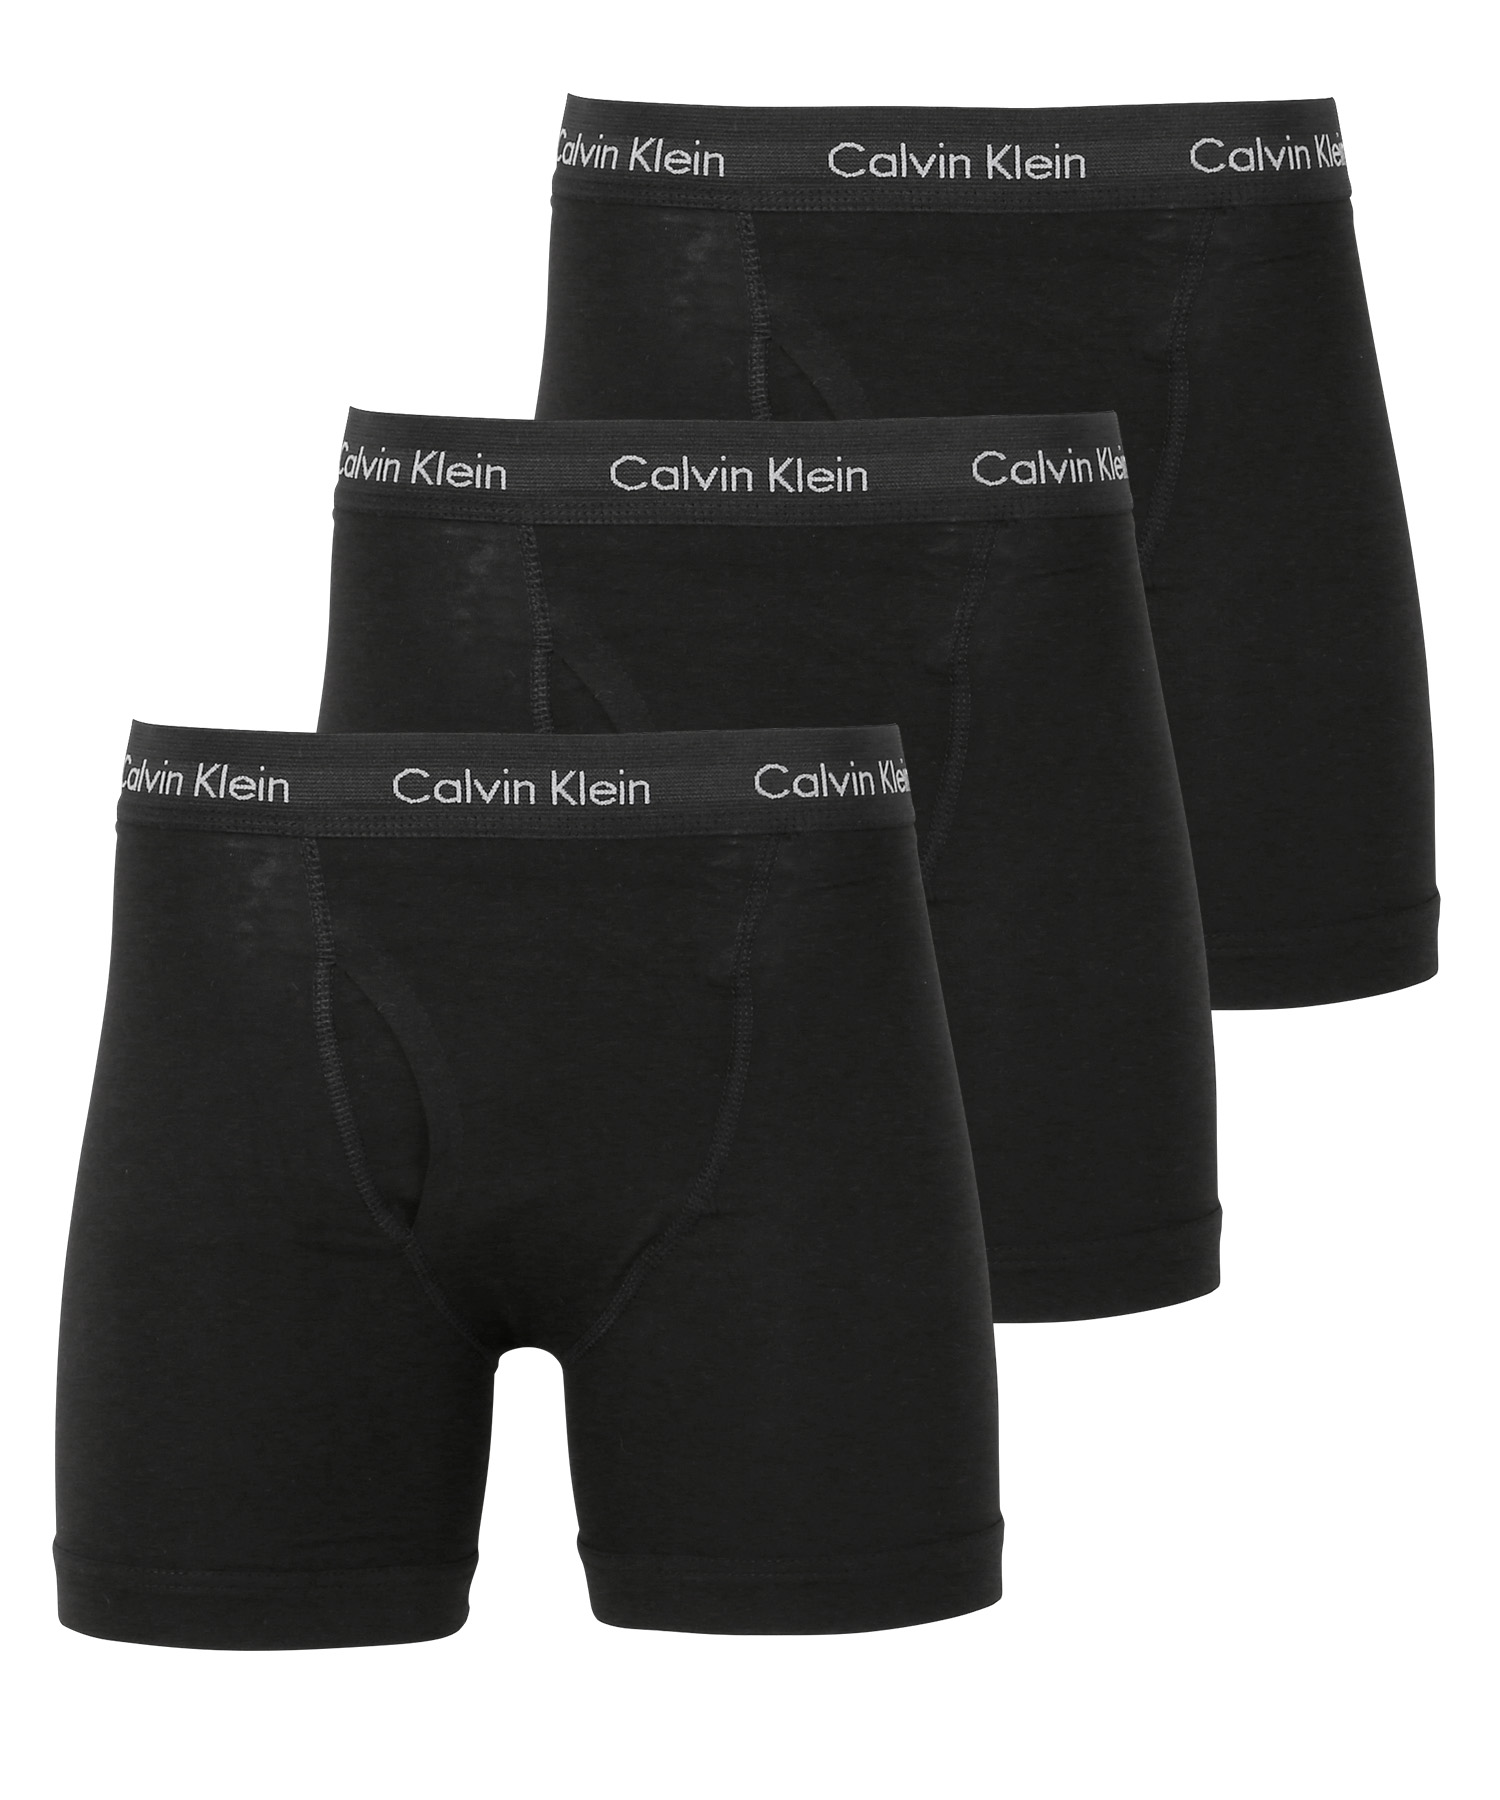 ワケあり カルバンクライン Calvin Klein ロングボクサーパンツ 3枚セット メンズ アンダーウェア コットン 綿 アウトレット 前開き  CK 高級 ブランド メール便